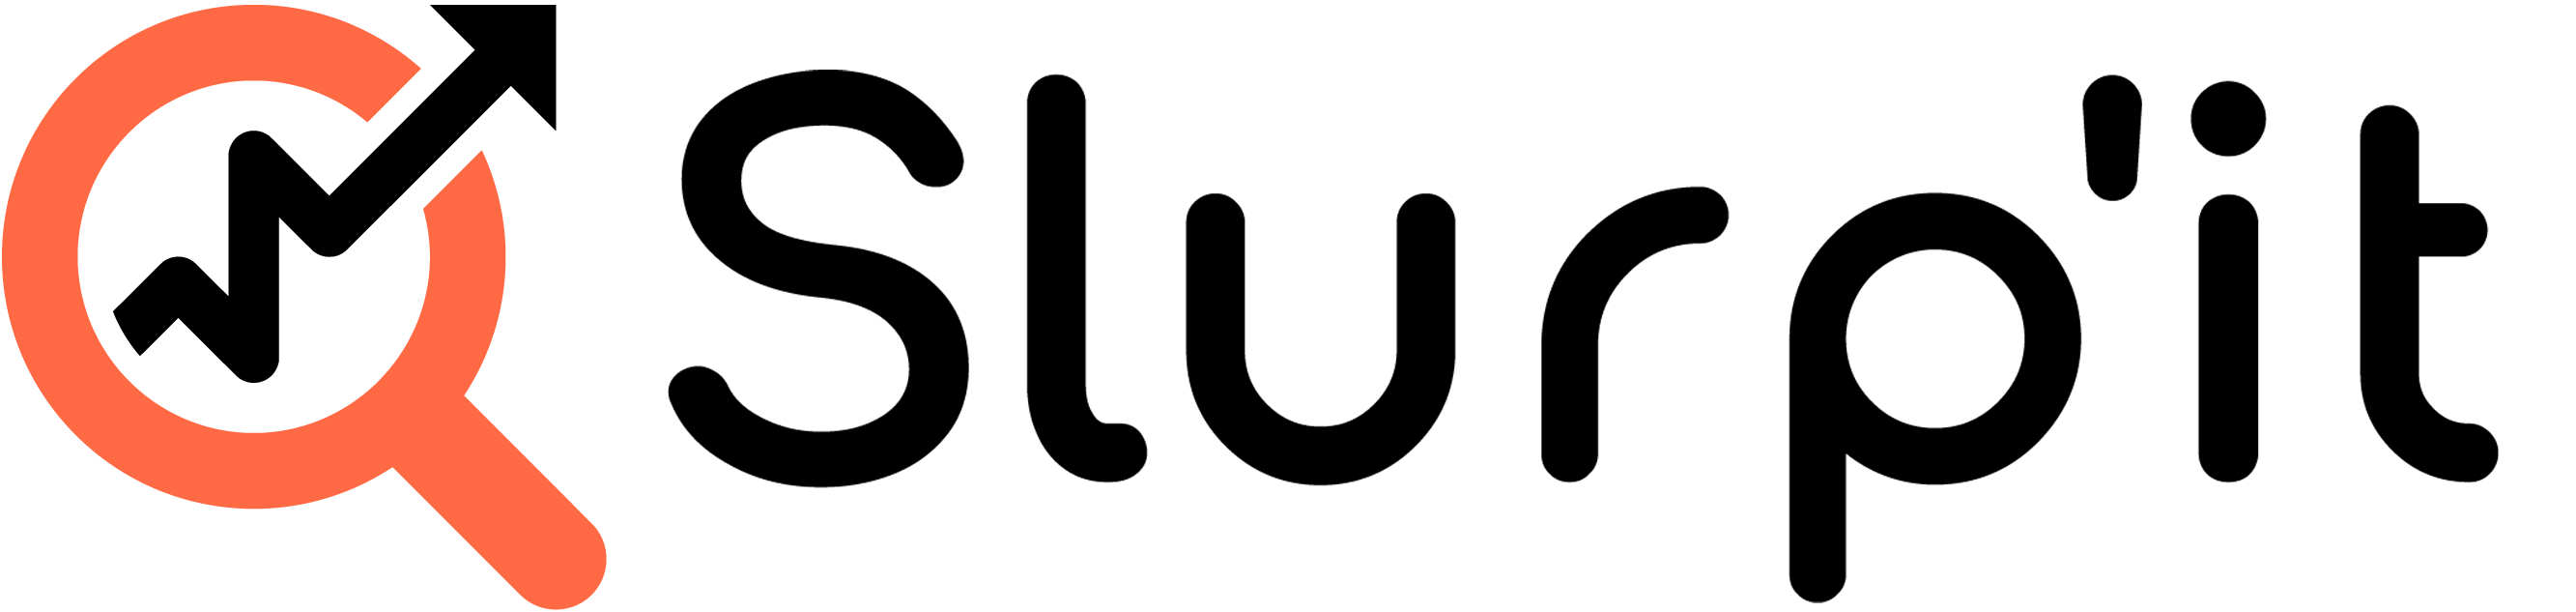 Slurpit logo